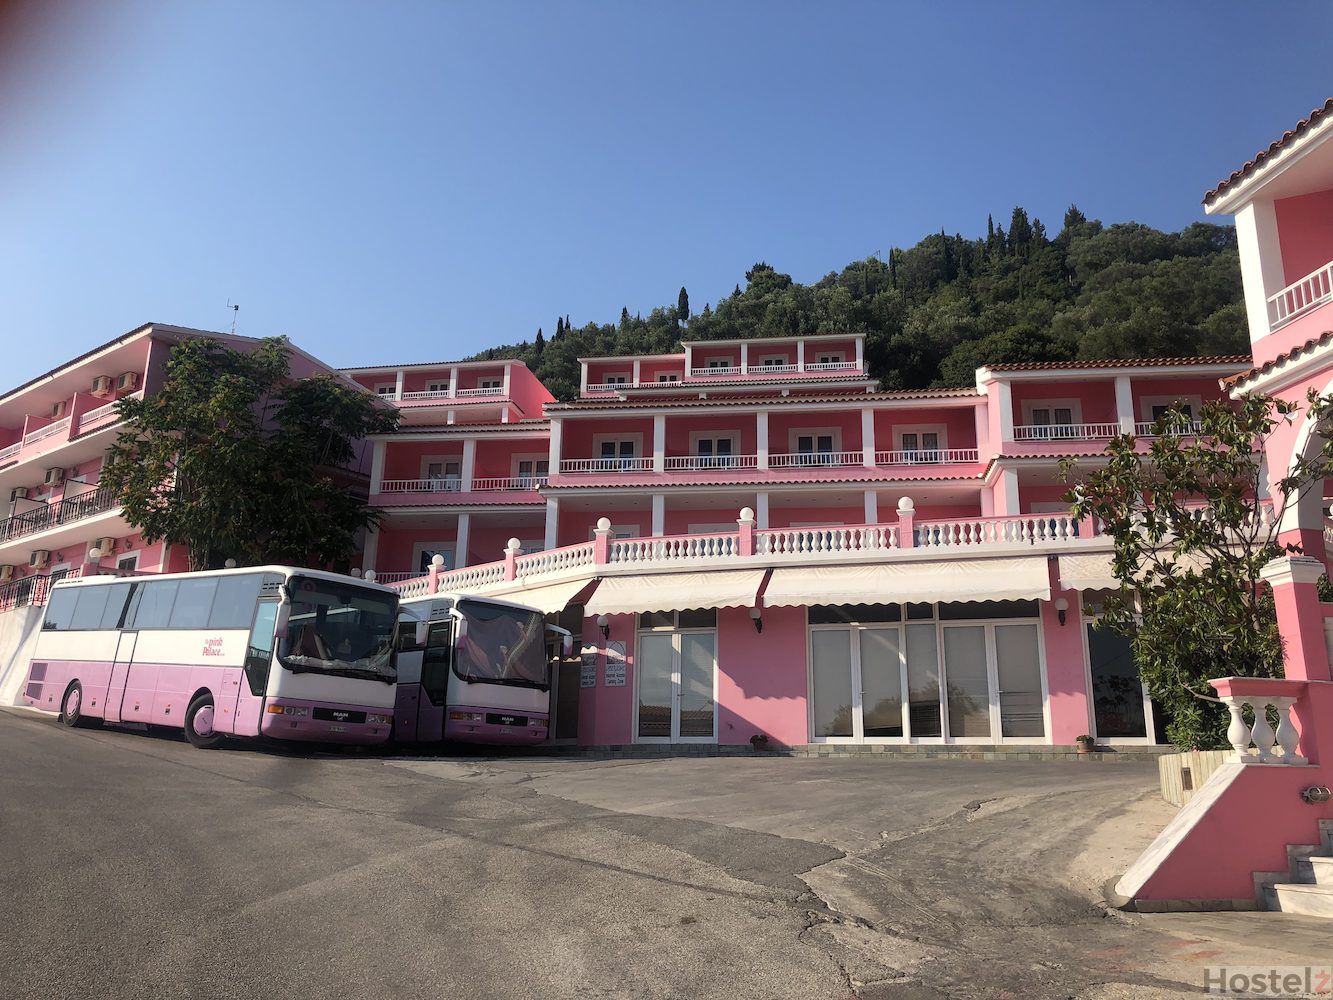 The Pink Palace, Corfu